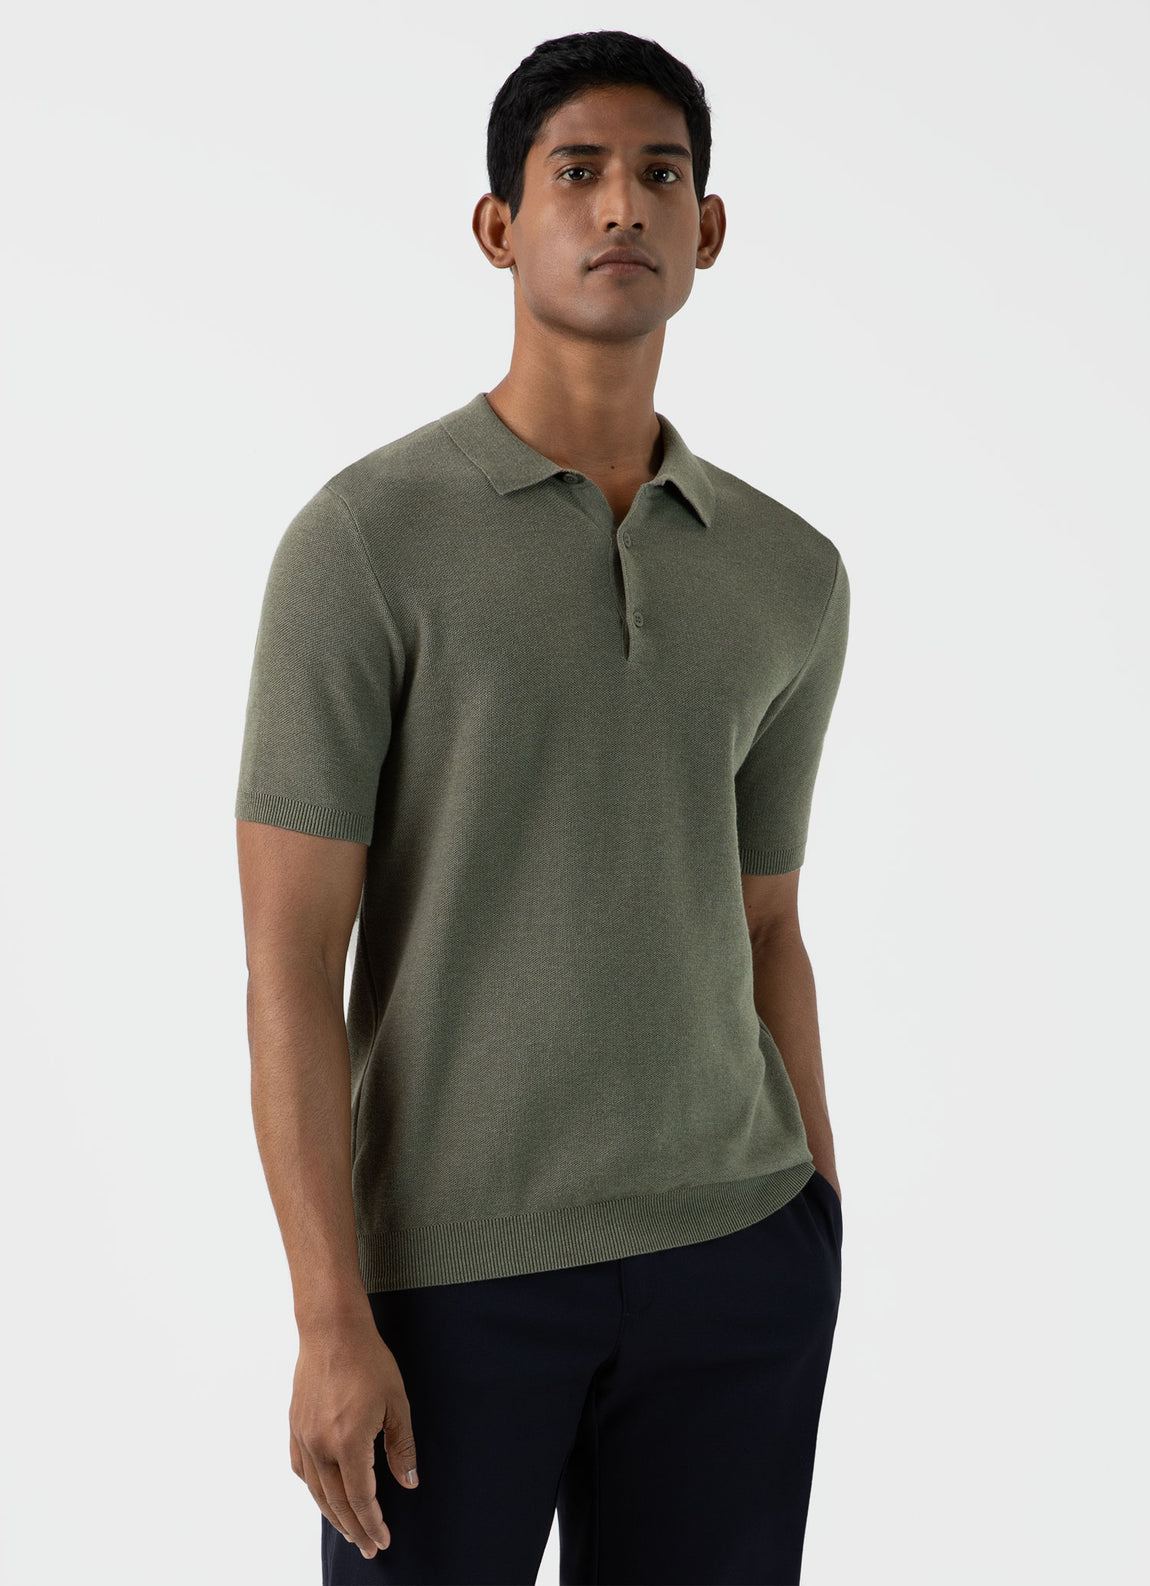 Men's Knit Polo Shirt in Pale Khaki Melange | Sunspel